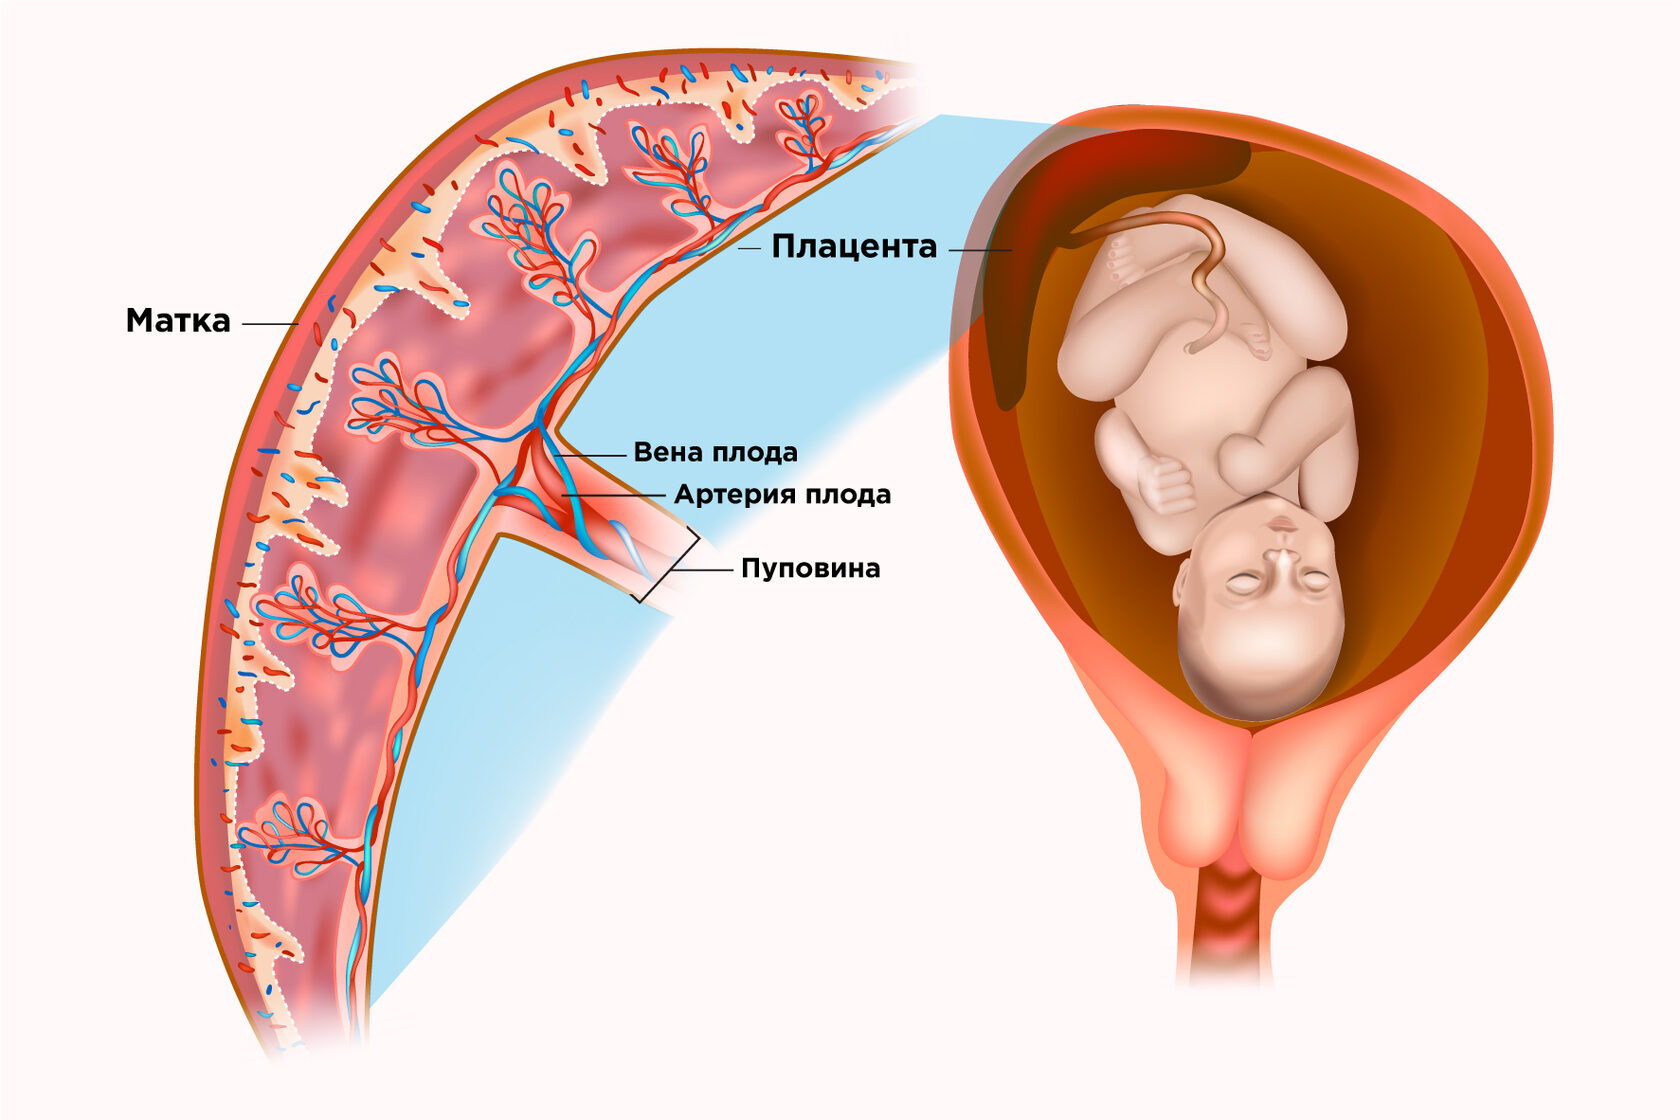 Инфаркт плаценты при беременности — опасно ли это?